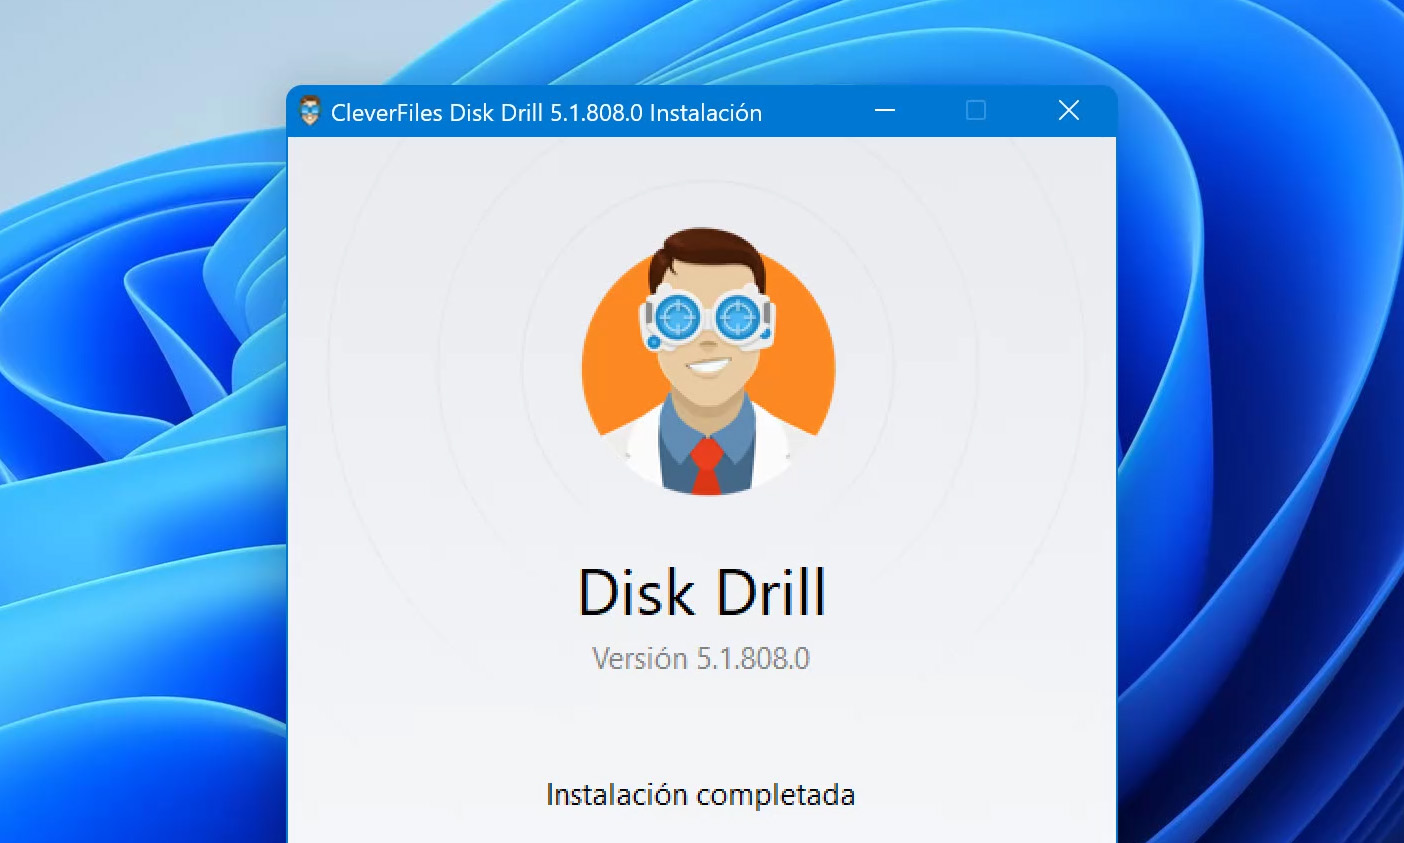 Inicia Disk Drill